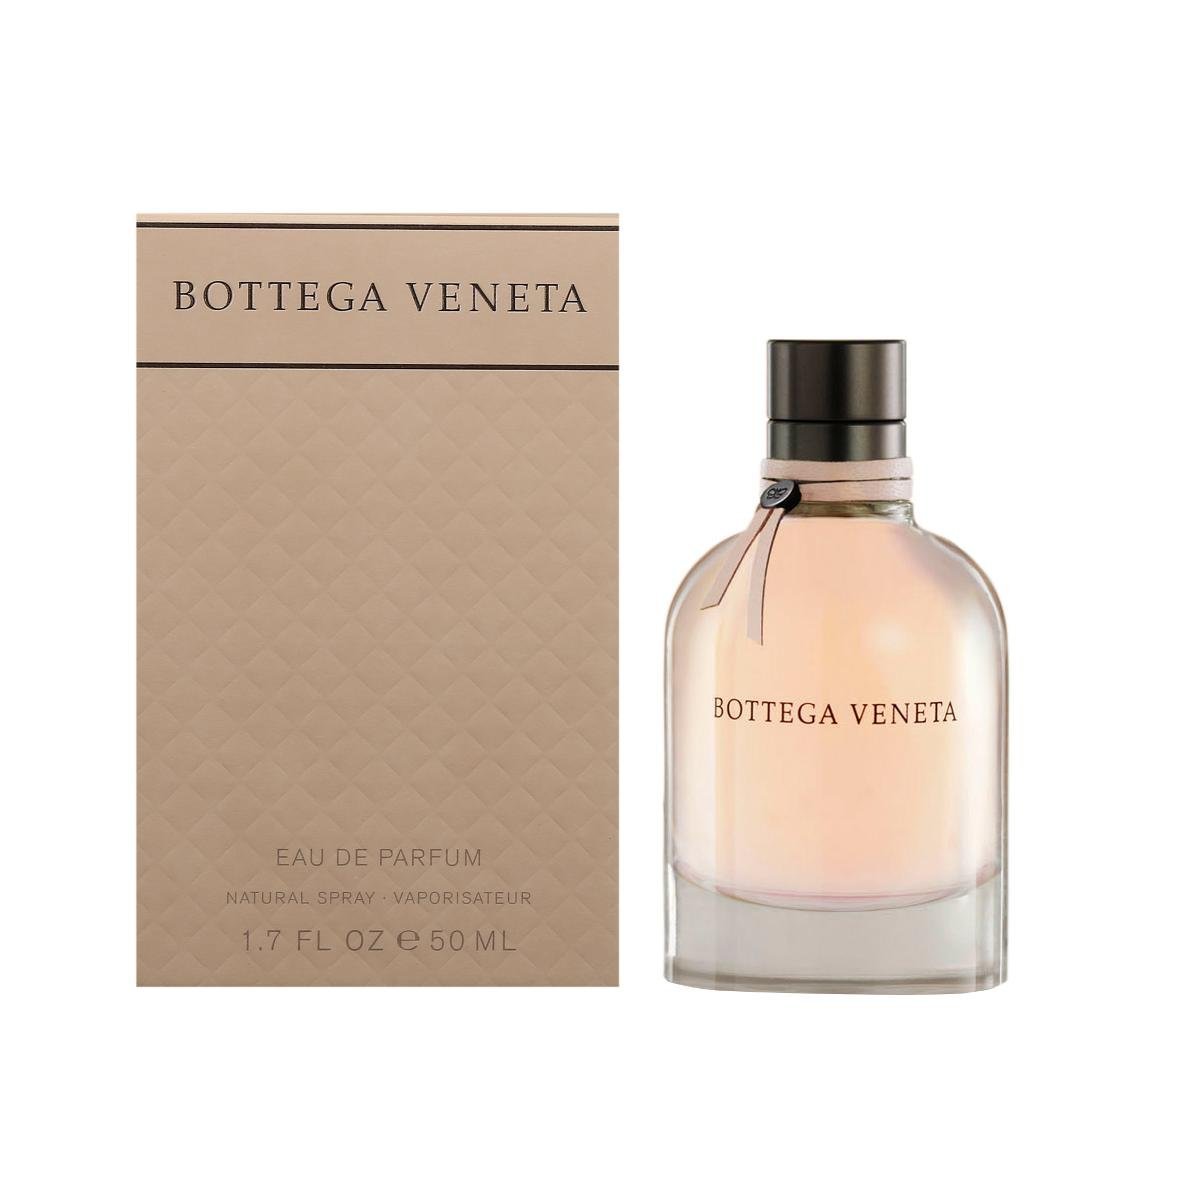 Bottega Veneta Bottega Veneta woda perfumowana 50ml